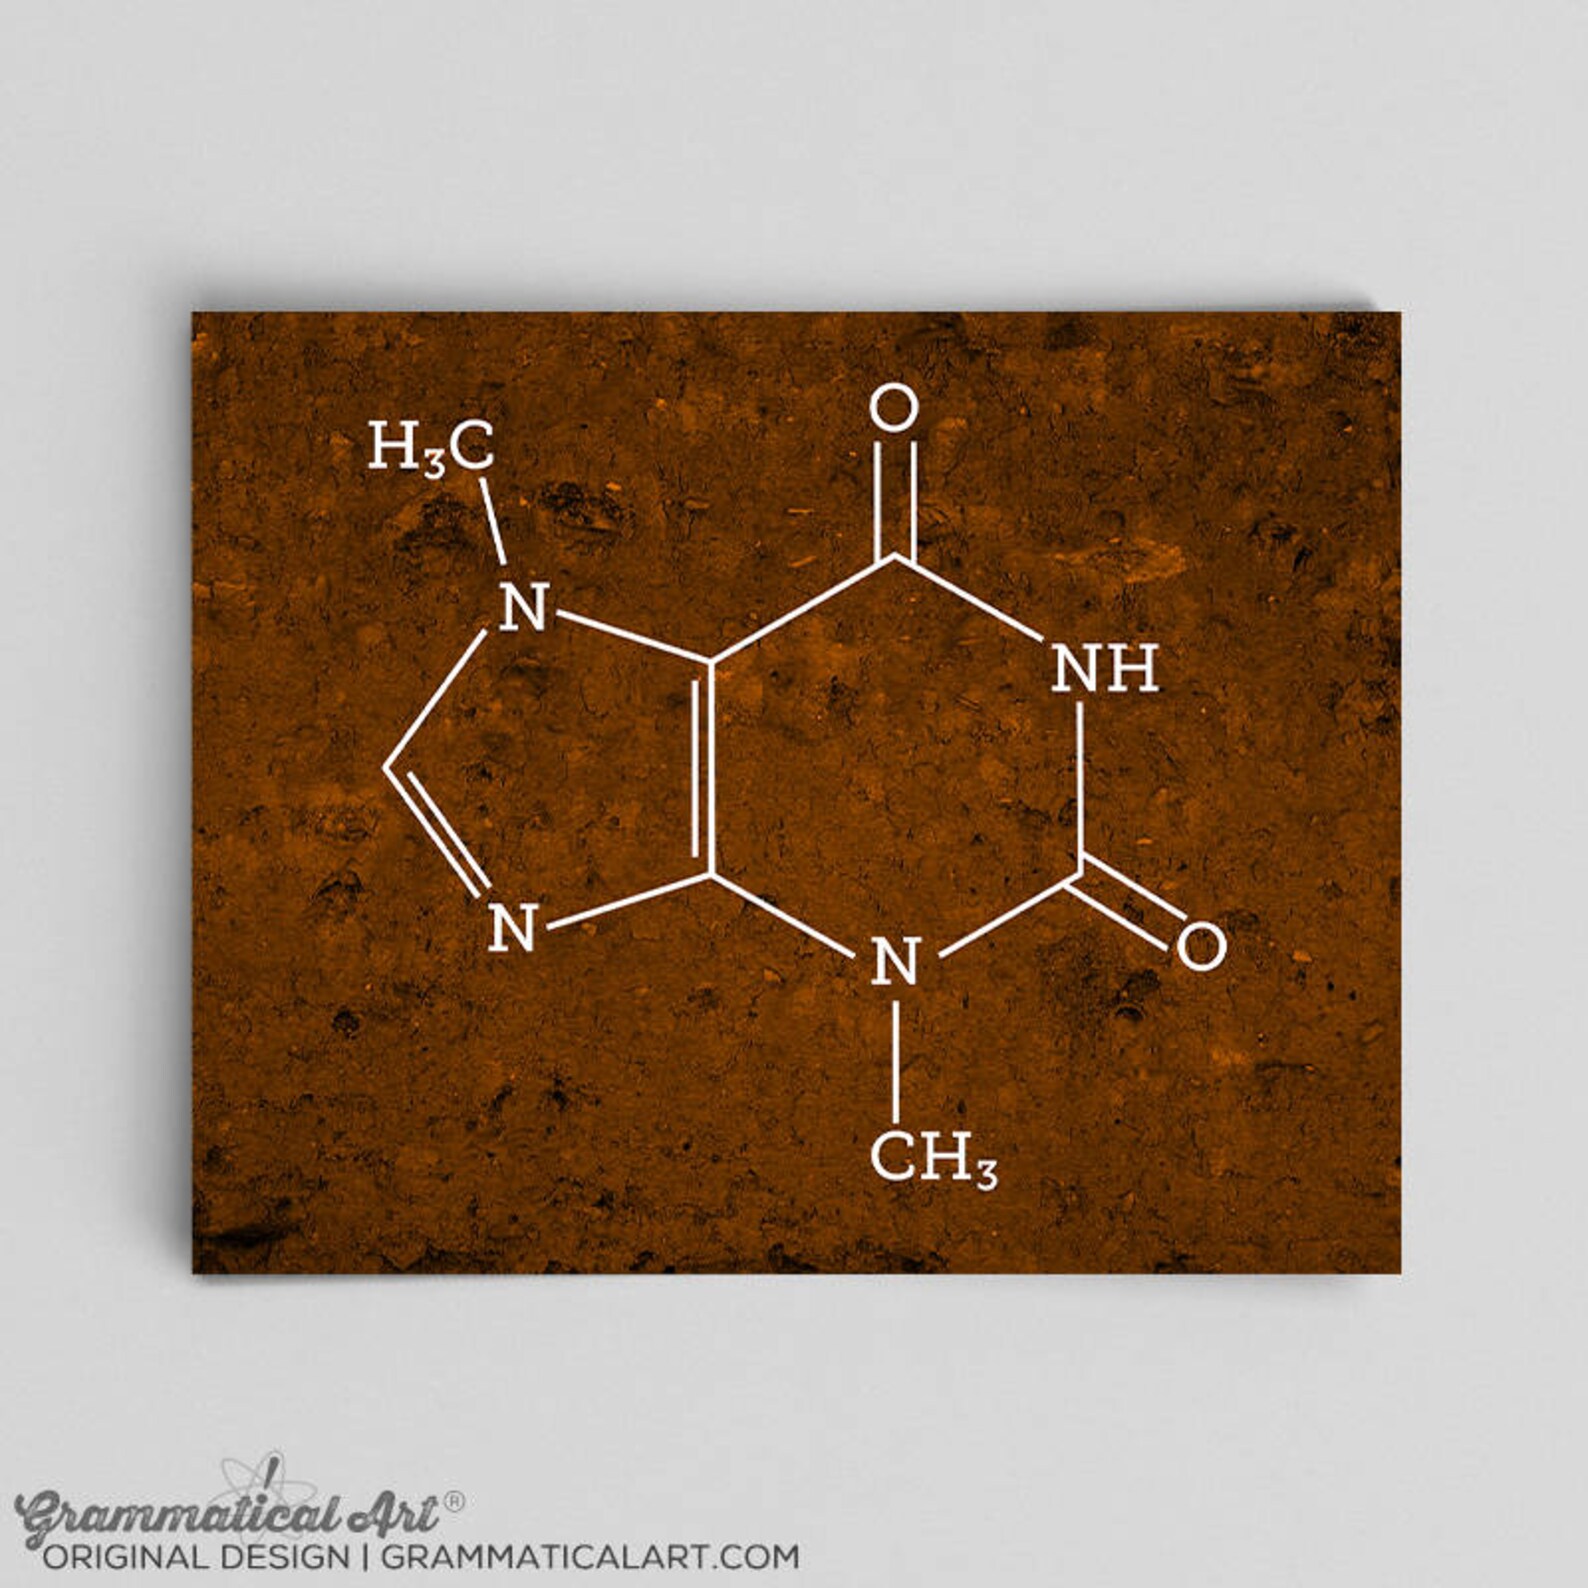 Химический шоколад. Формула шоколада. Молекула шоколада. Структурная формула шоколада. Химия шоколада.